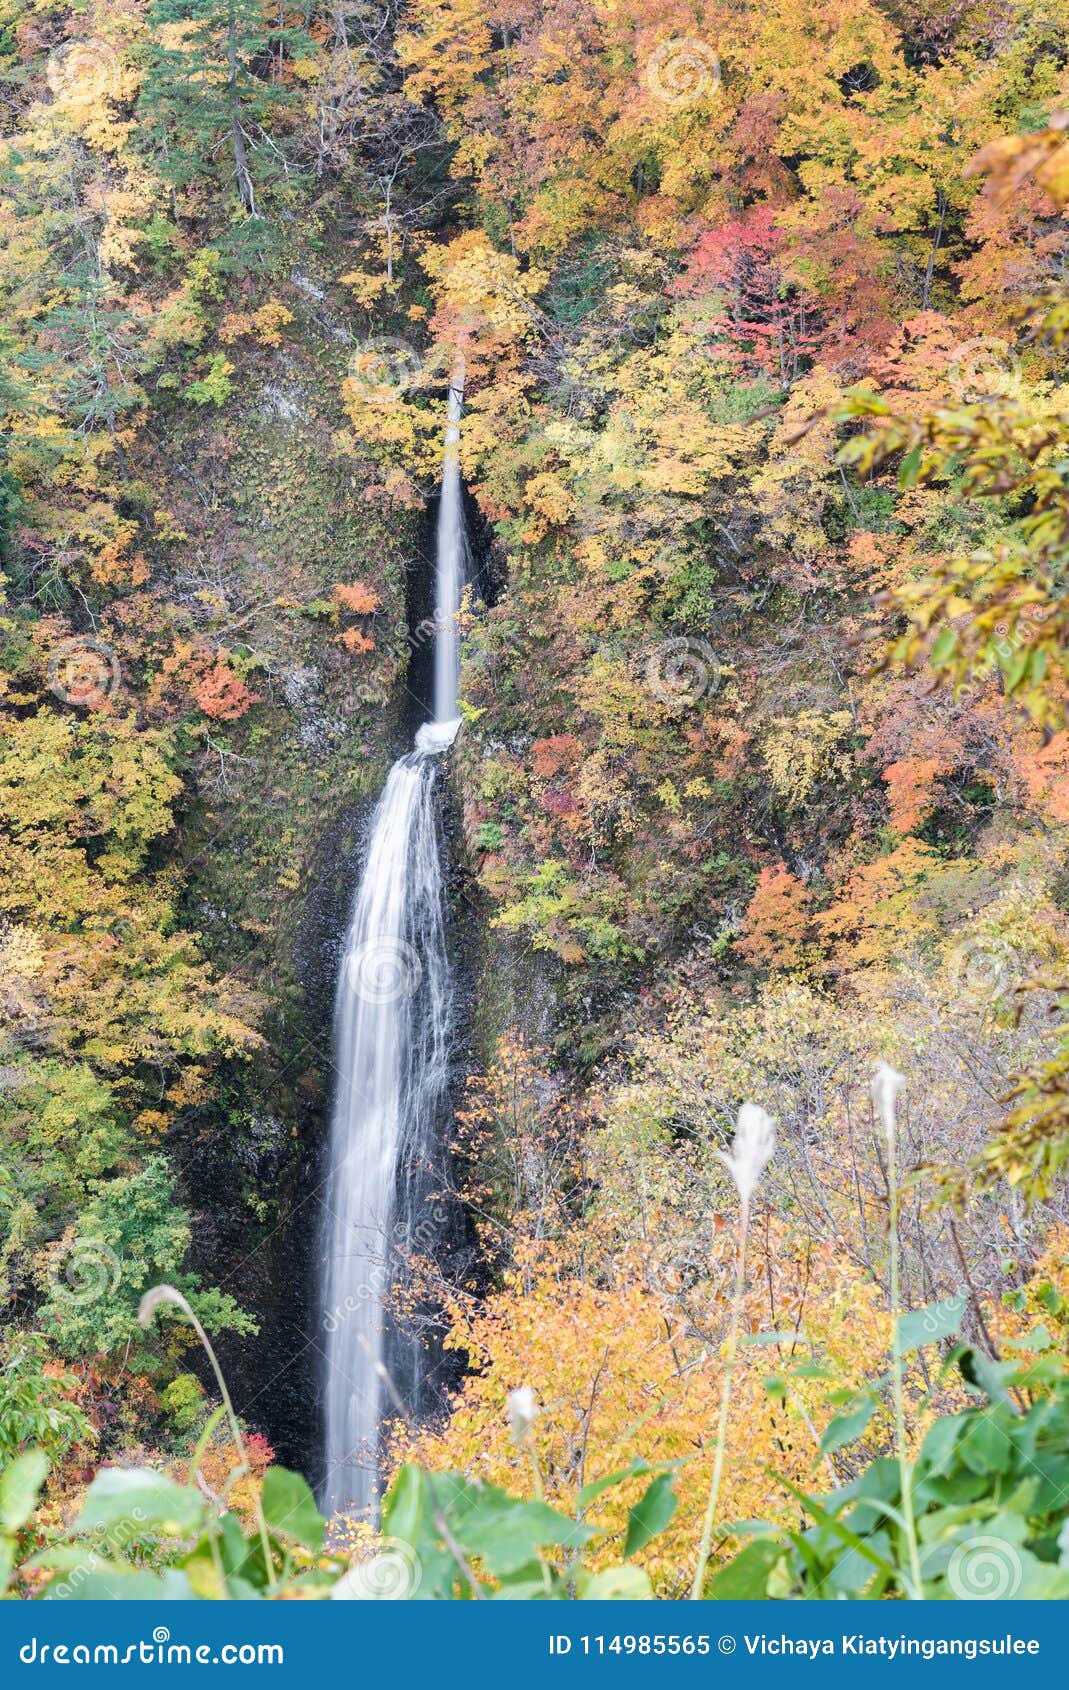 tsumijikura taki waterfall fukushima